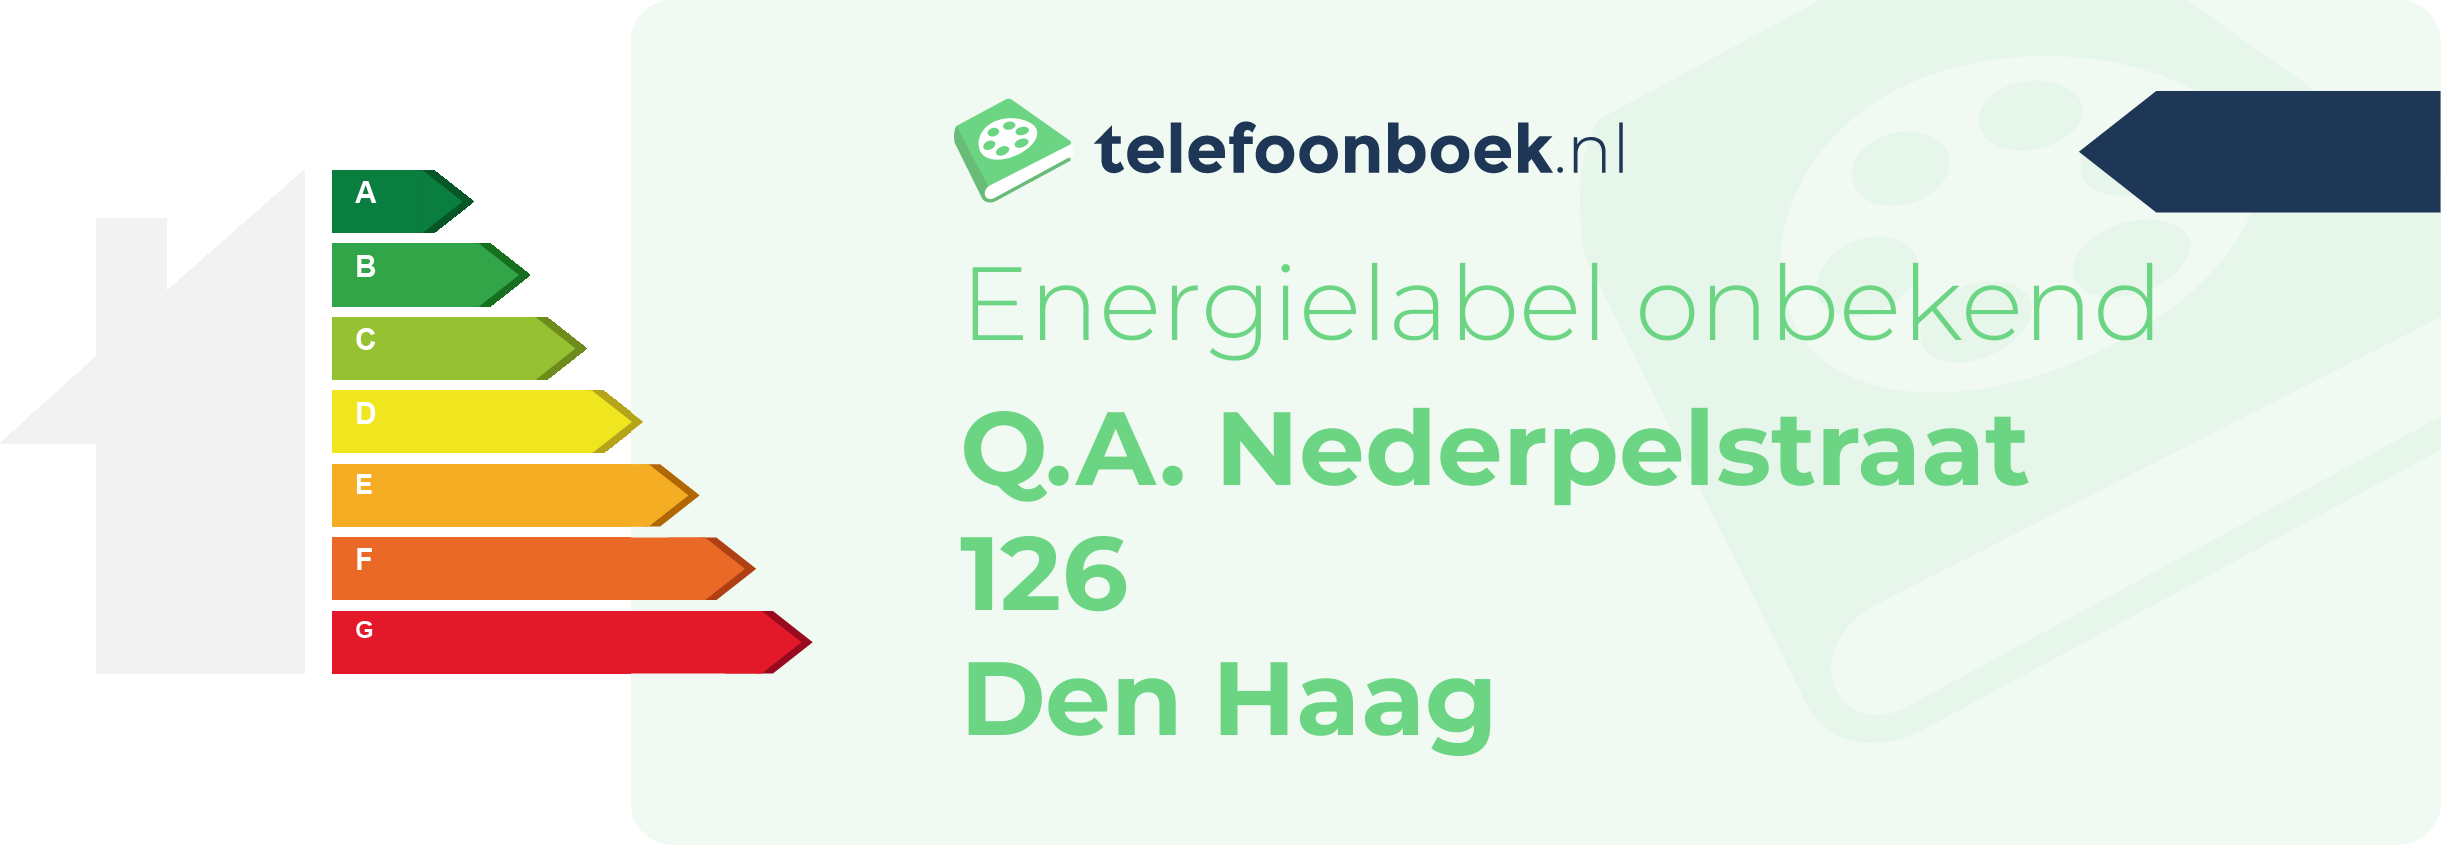 Energielabel Q.A. Nederpelstraat 126 Den Haag